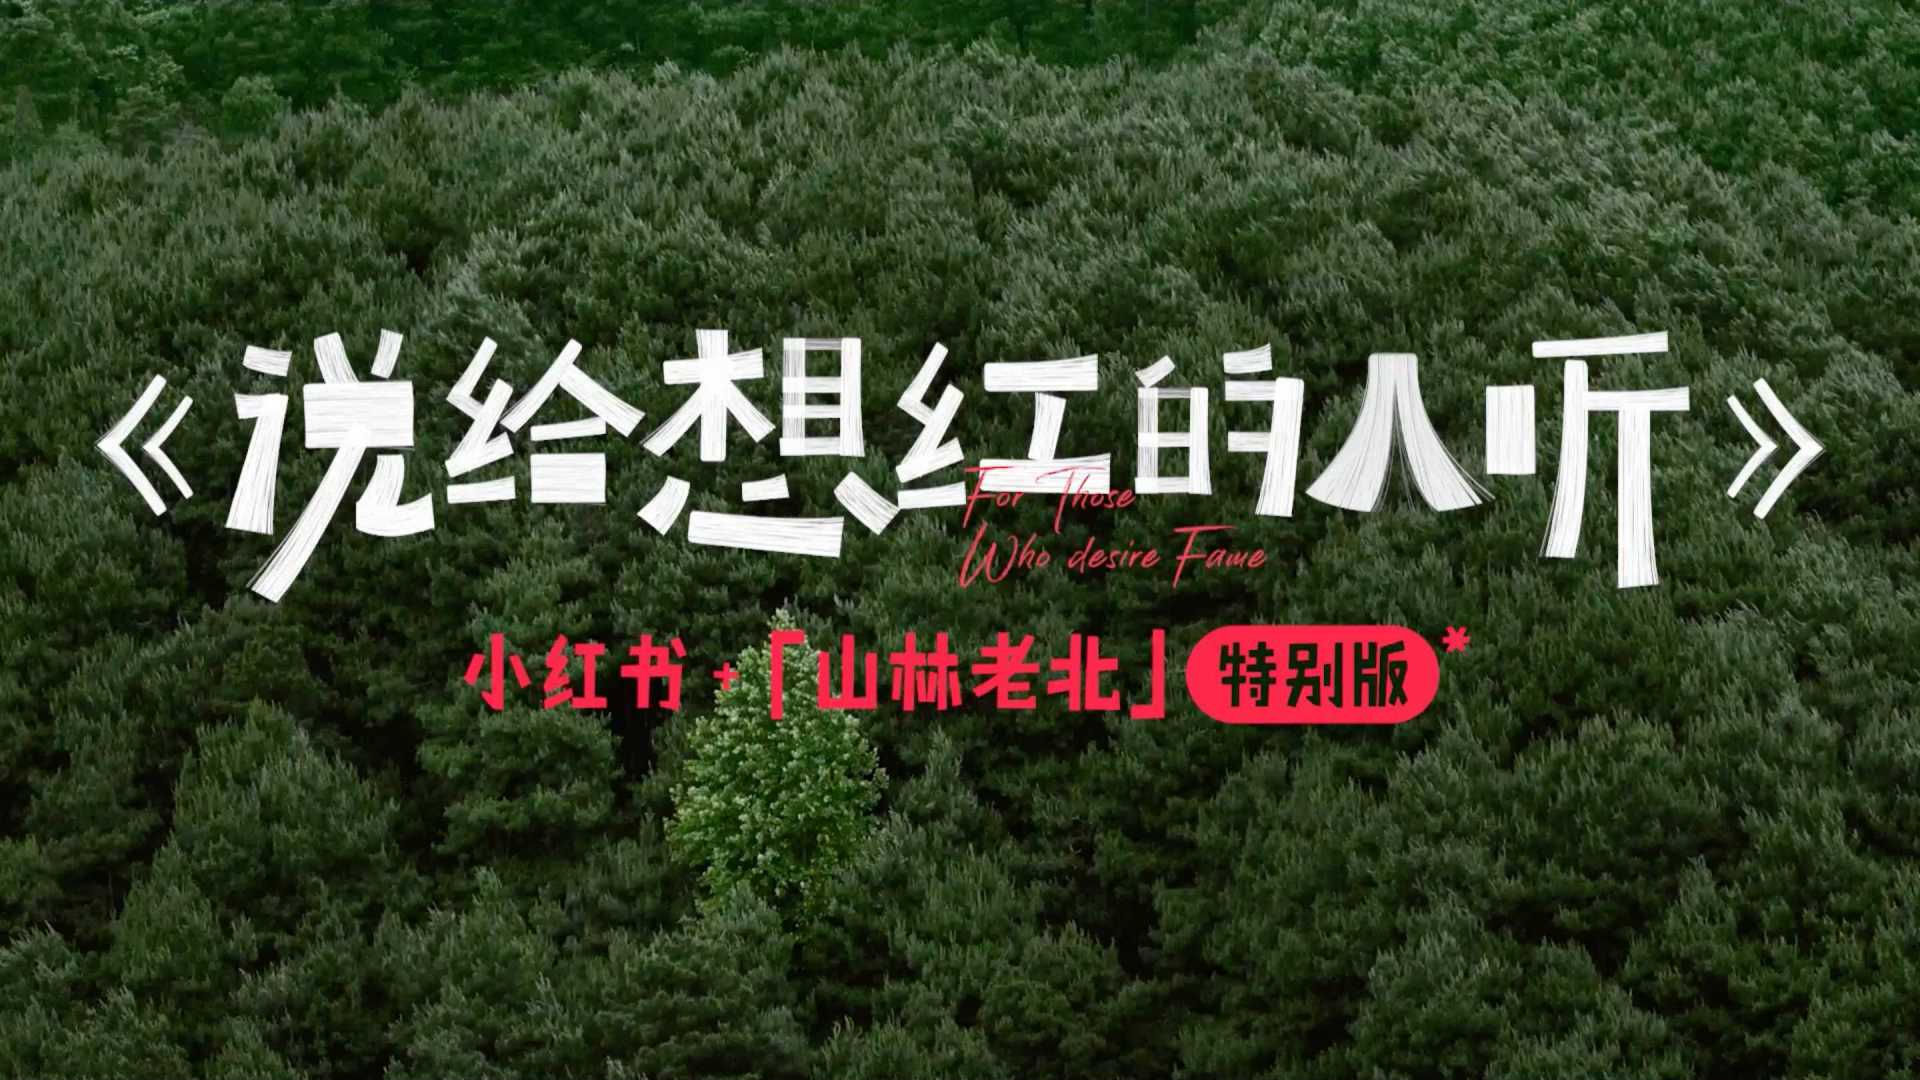 《說給想紅的人聽》 纪录片版 by 小紅書 + 張震嶽 + W